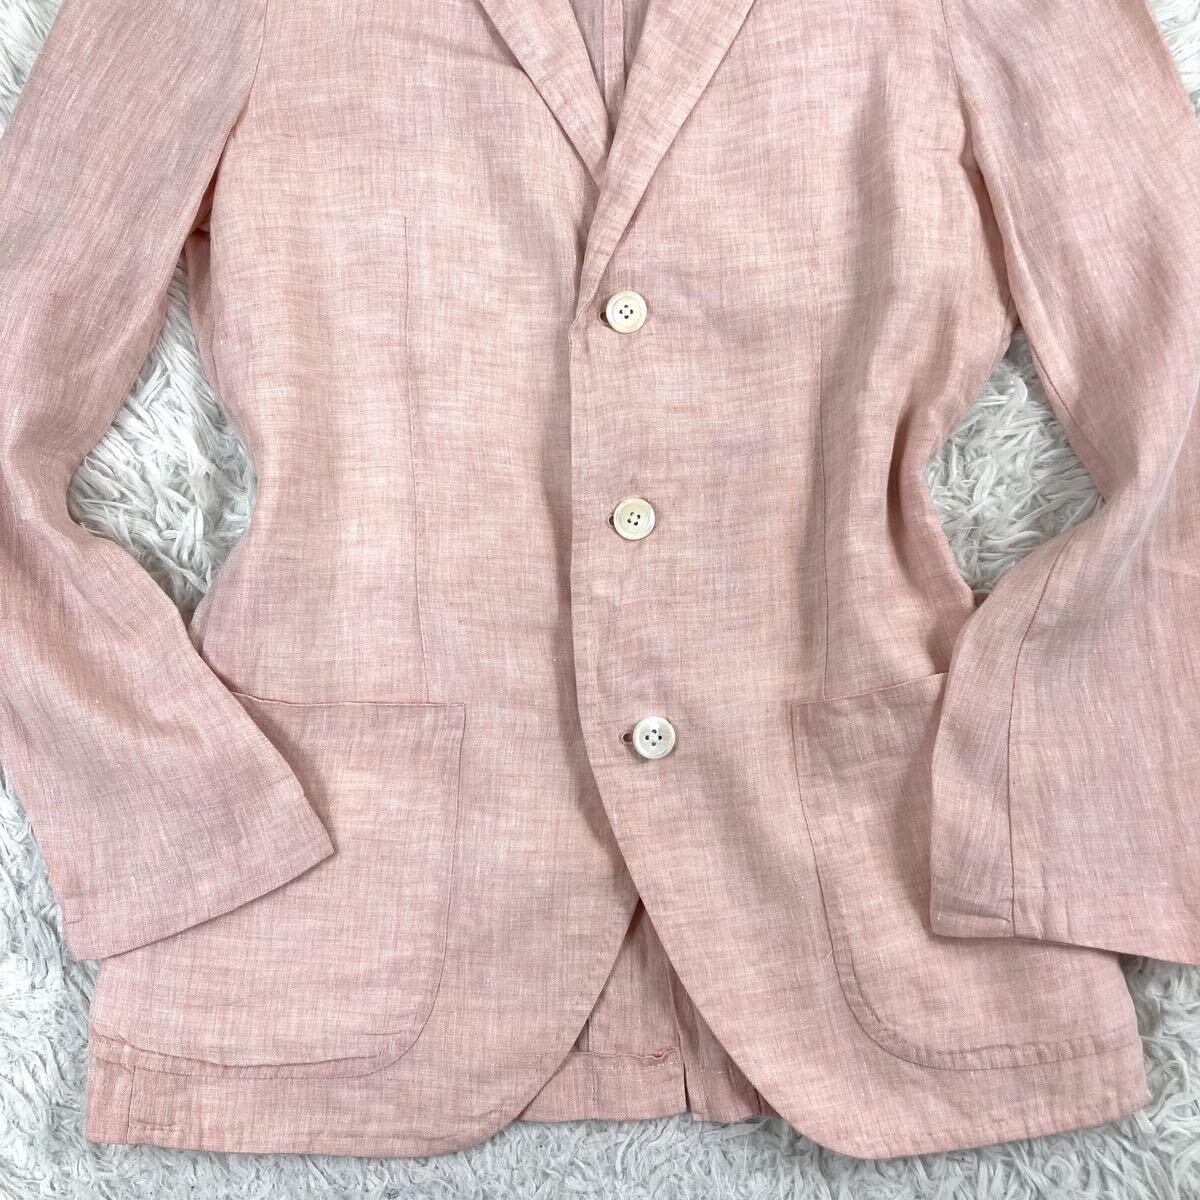  прекрасный товар /linen100%* TOMORROWLAND Tomorrowland tailored jacket внешний Anne темно синий лен материалы мужской легкий весна лето розовый серия необшитый на спине 